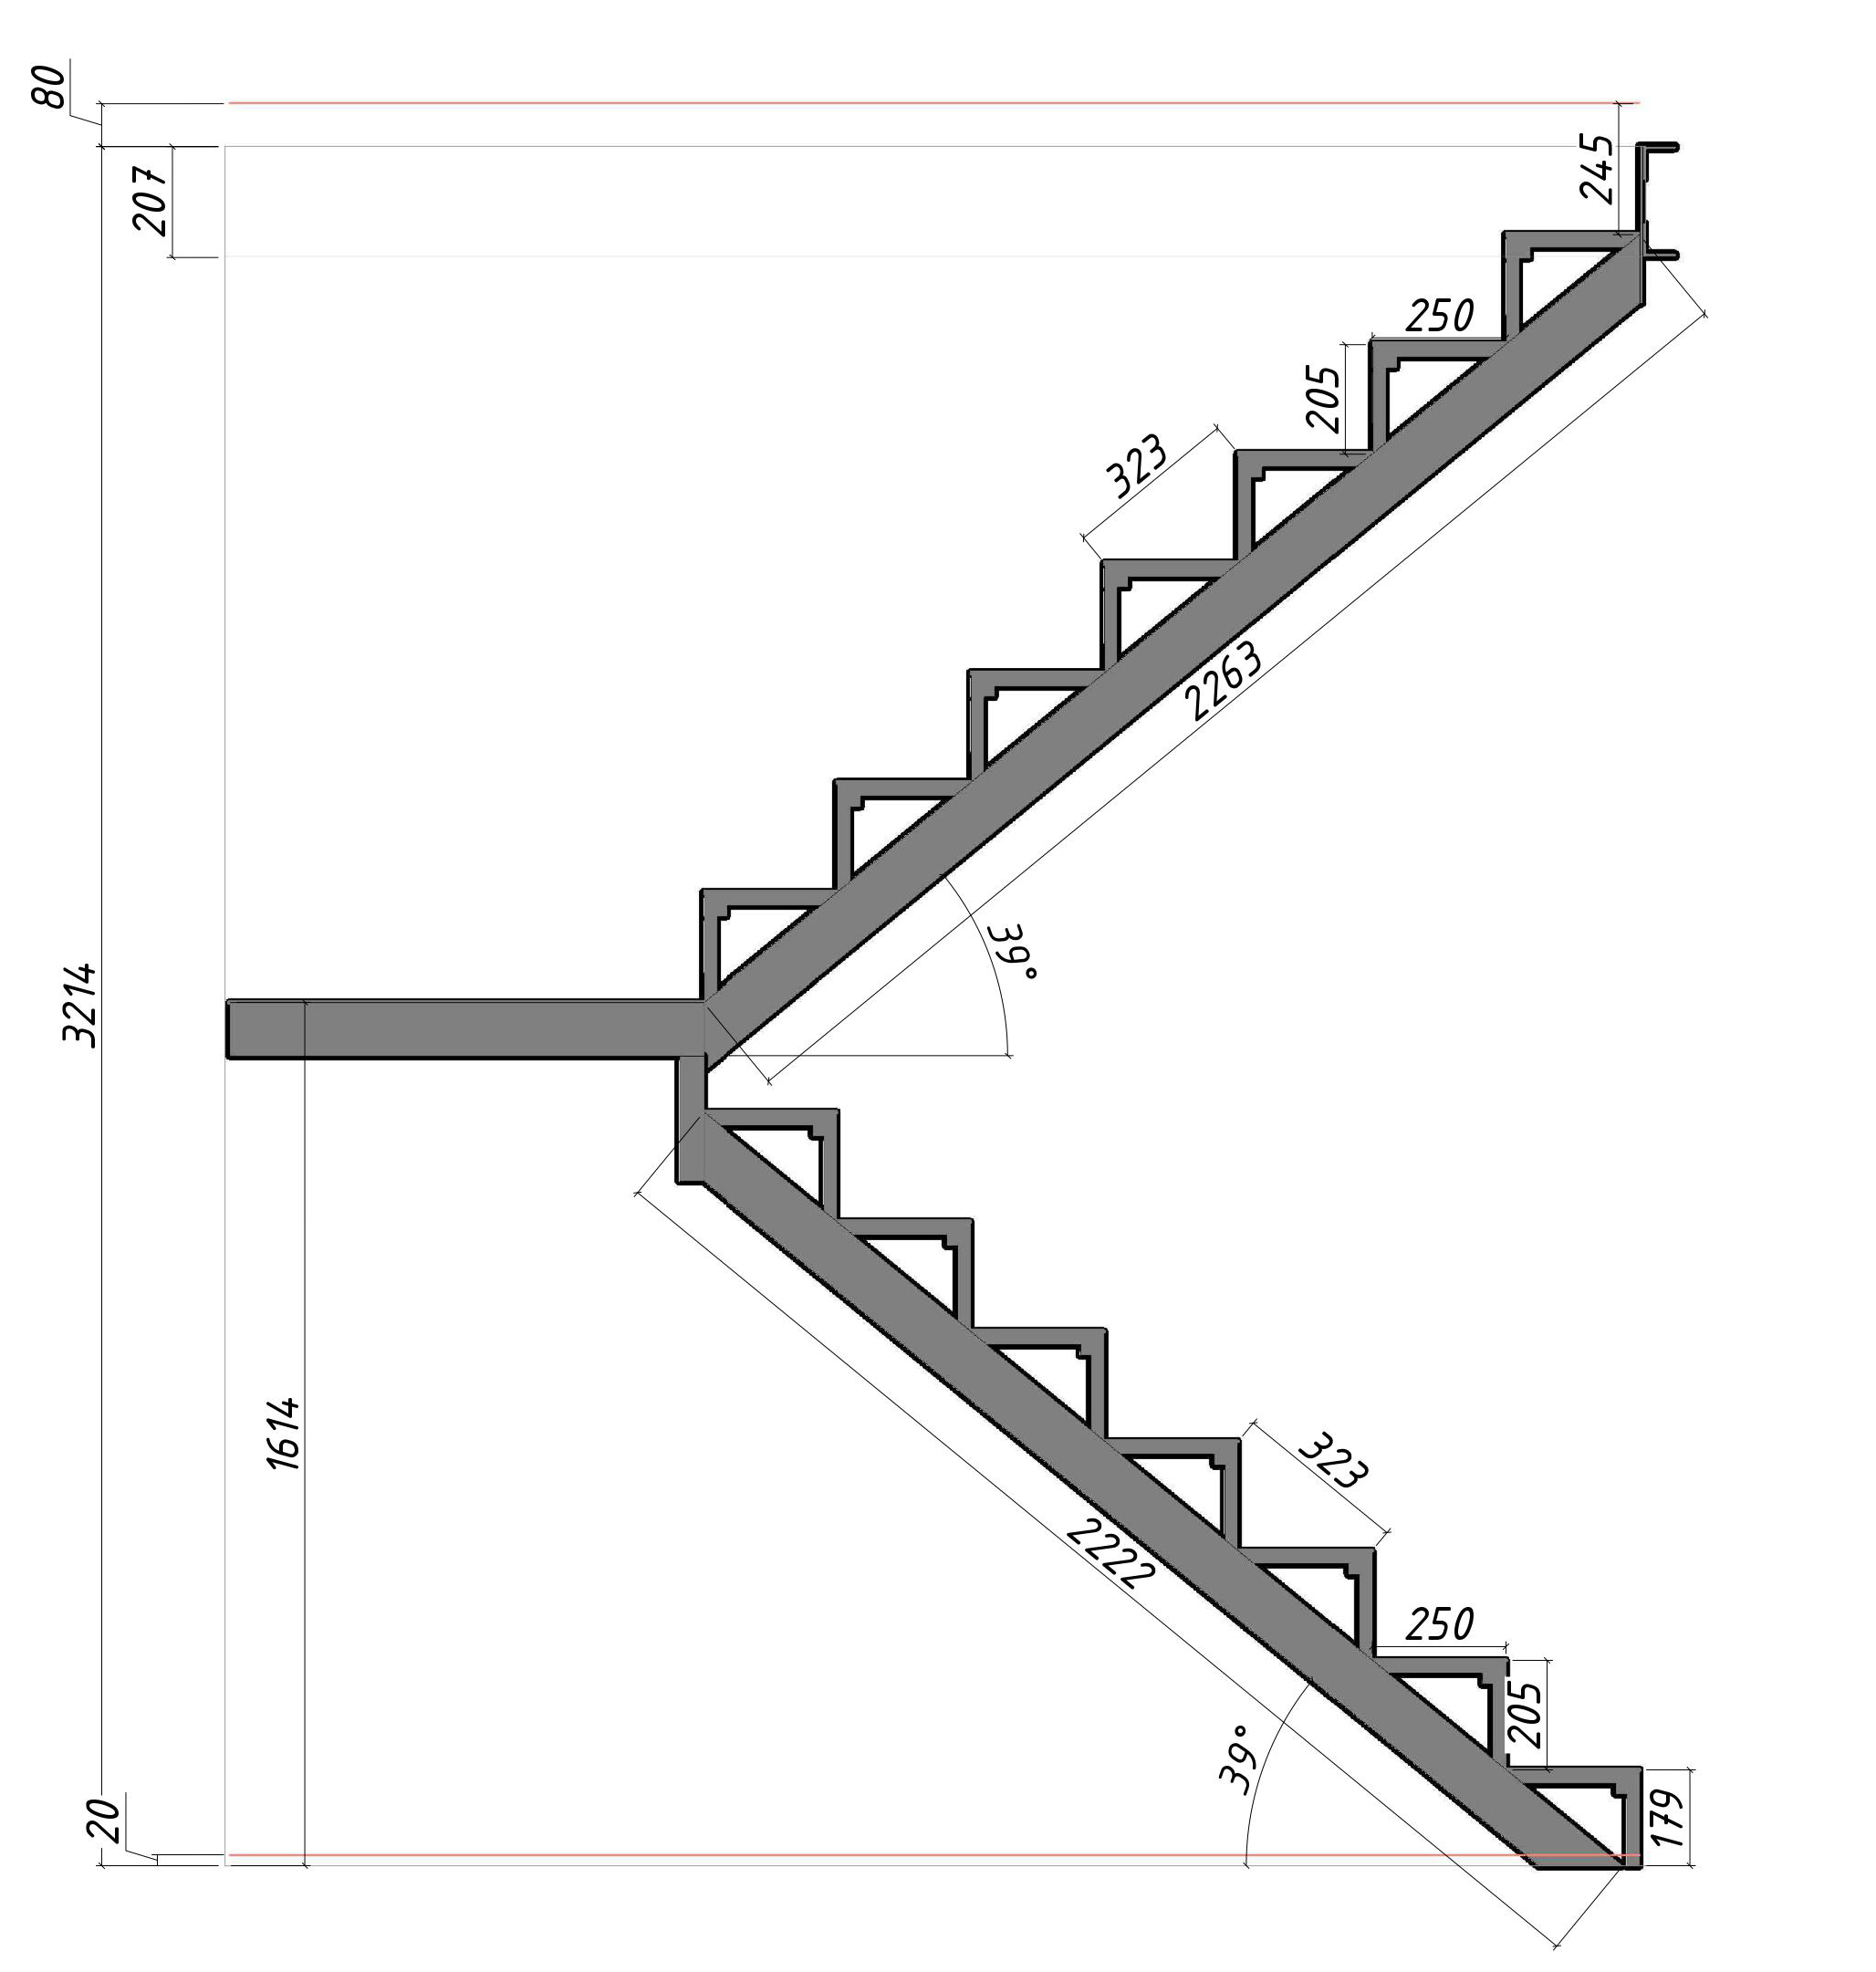 Как сделать лестницу металлическую на второй этаж своими руками